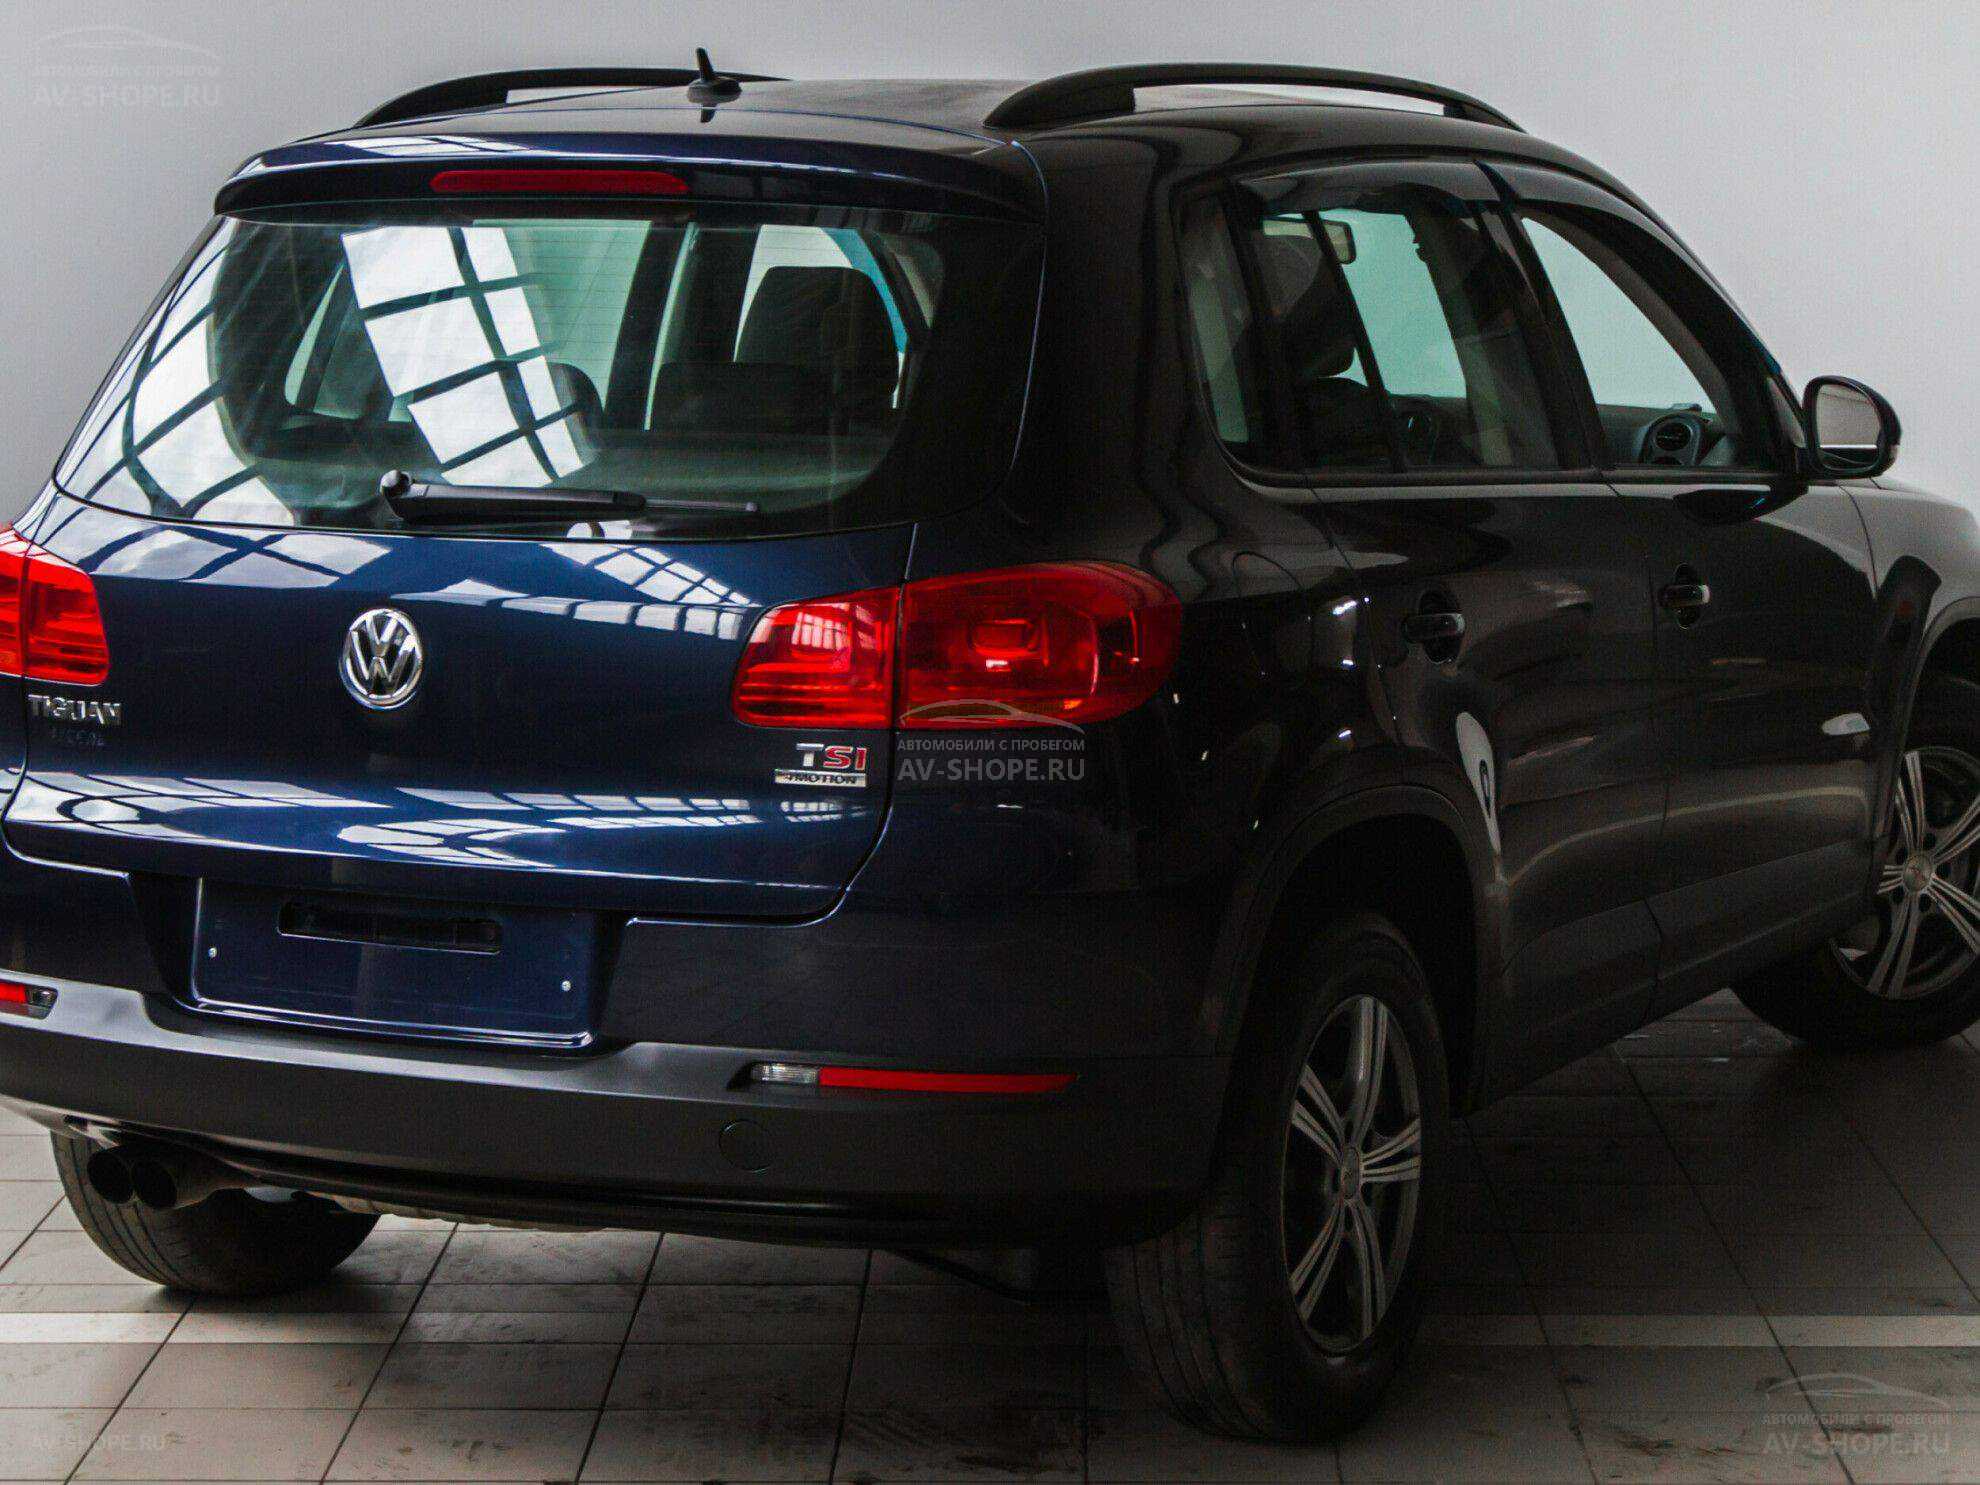 Купить фольксваген тигуан 2012 год. Tiguan 1.4 MT 2012. Volkswagen Tiguan 1.4 (150 л.с.). Фольксваген Тигуан 2012. Тигуан Фольксваген 2012г.